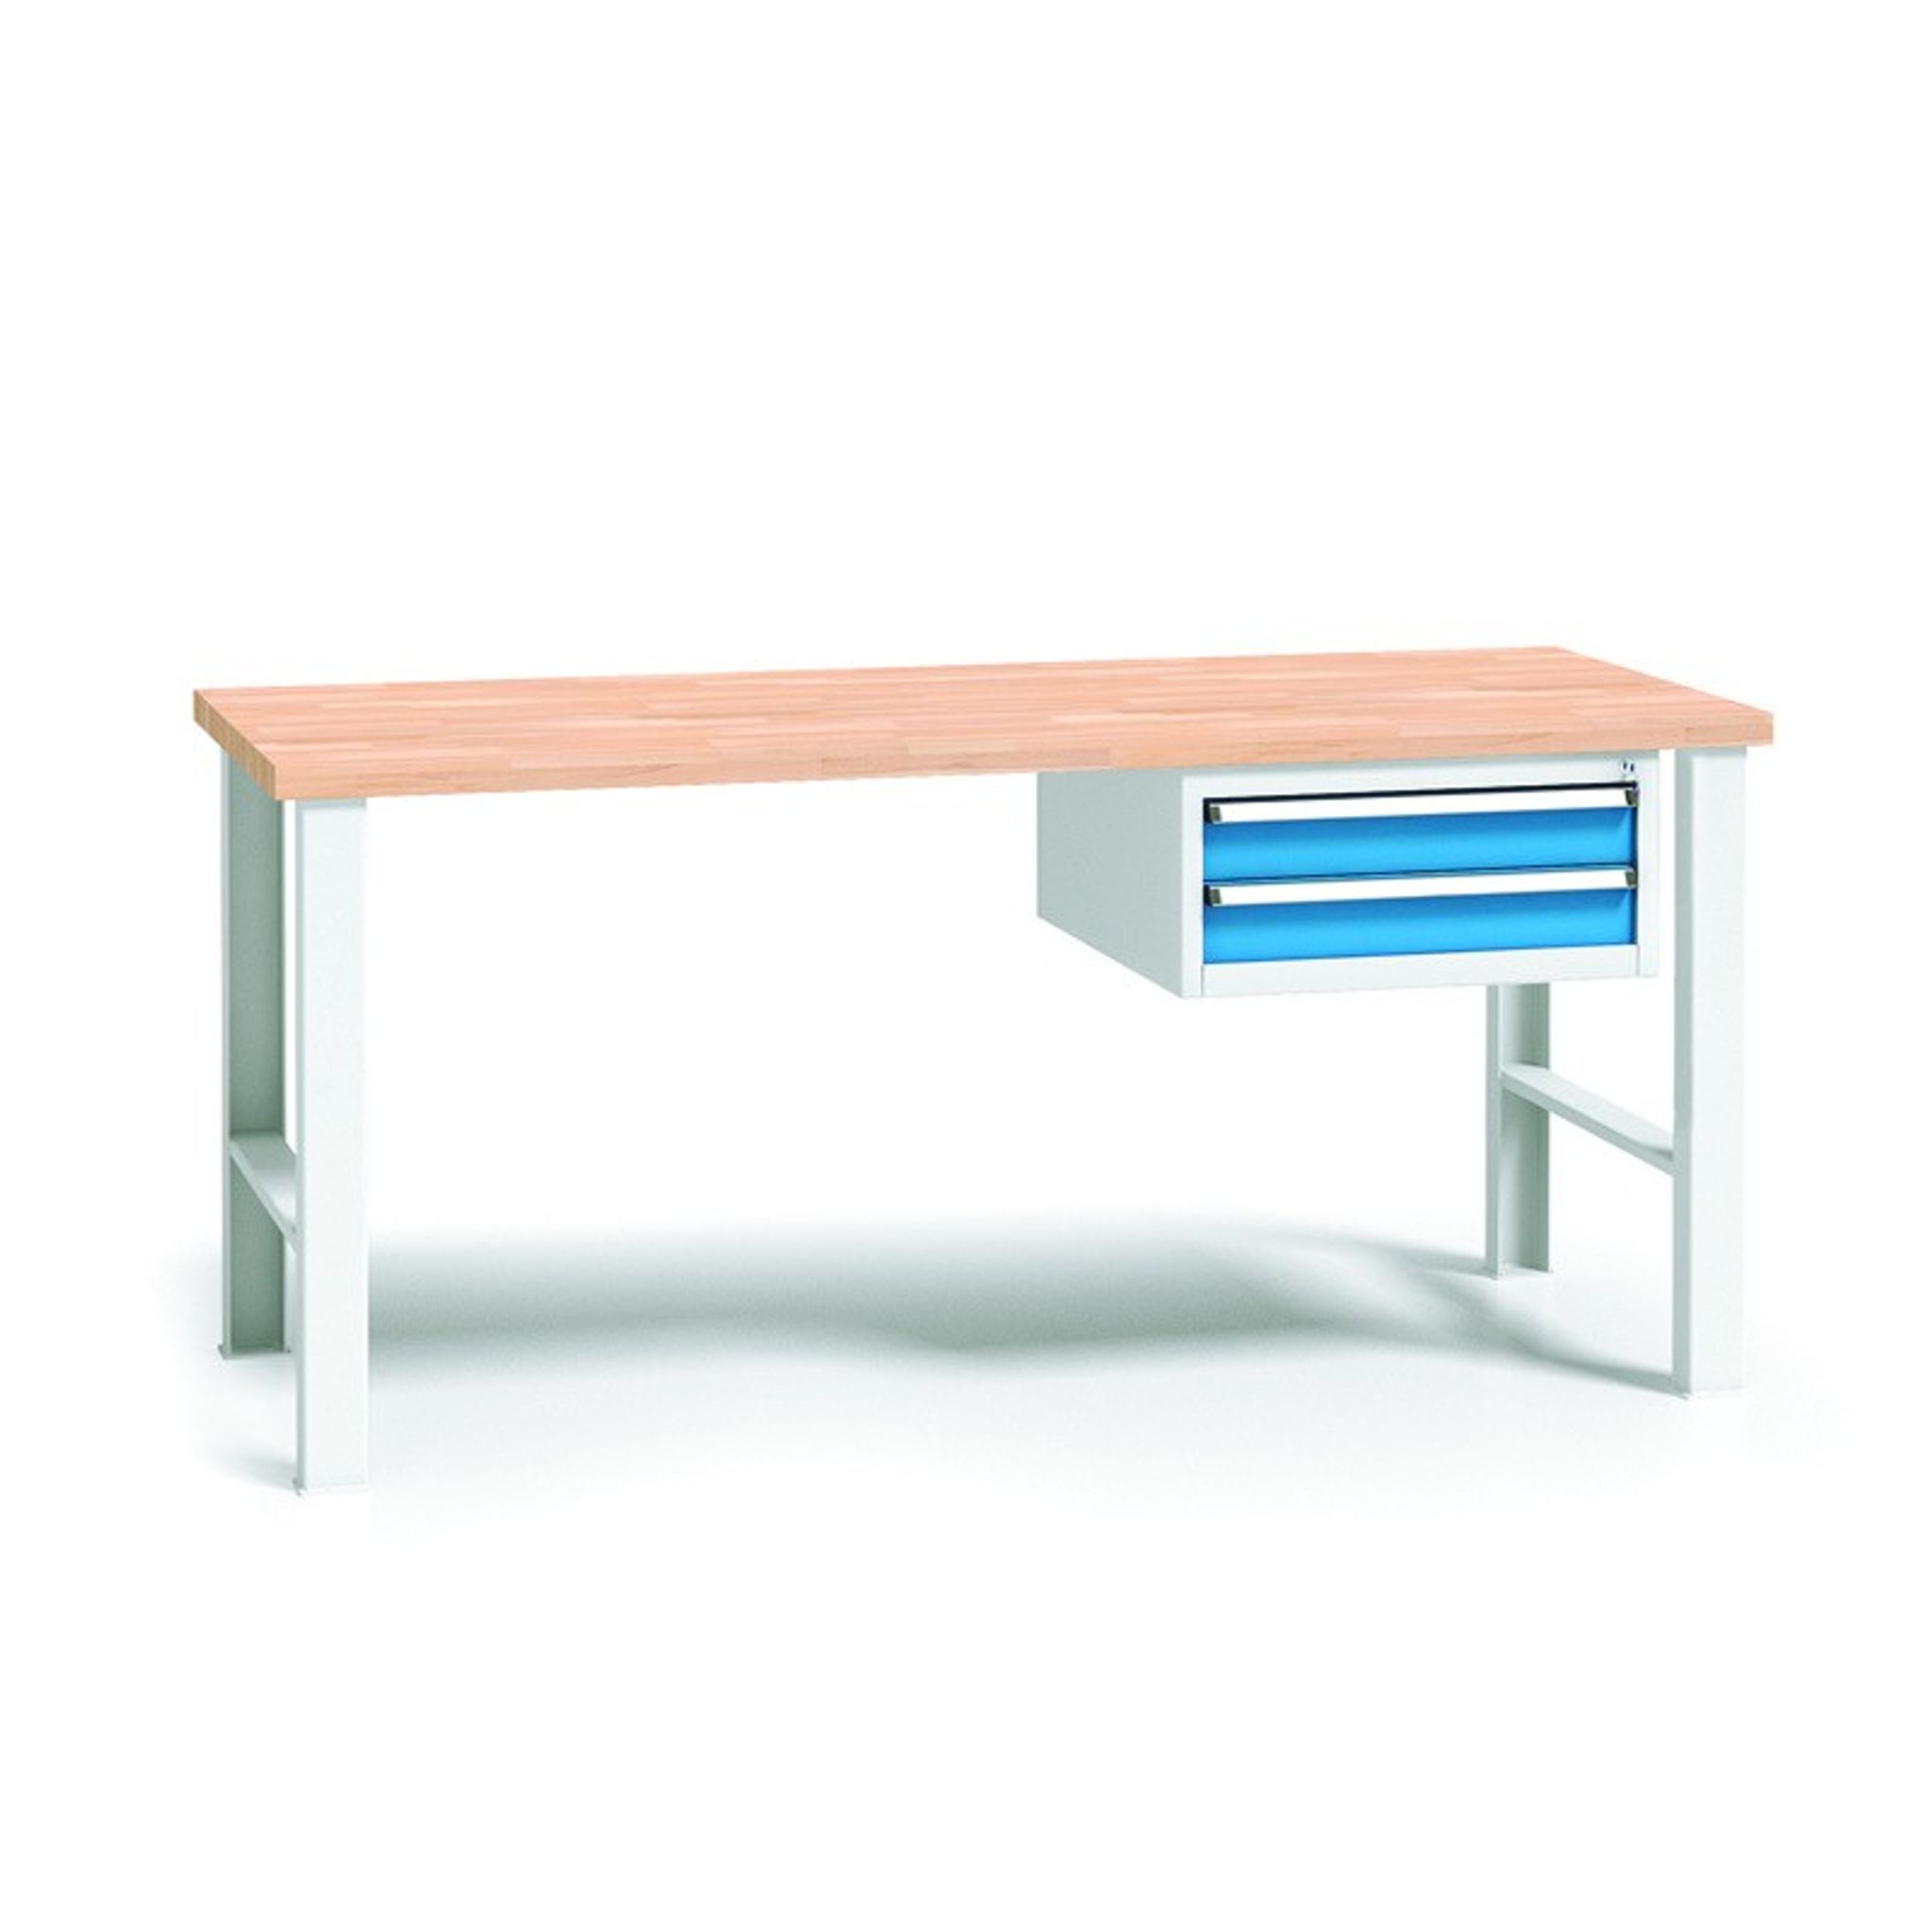 Pracovný stôl do dielne WL so závesným boxom na náradie, buková škárovka, 2 zásuvky, pevné kovové nohy, 1700 mm